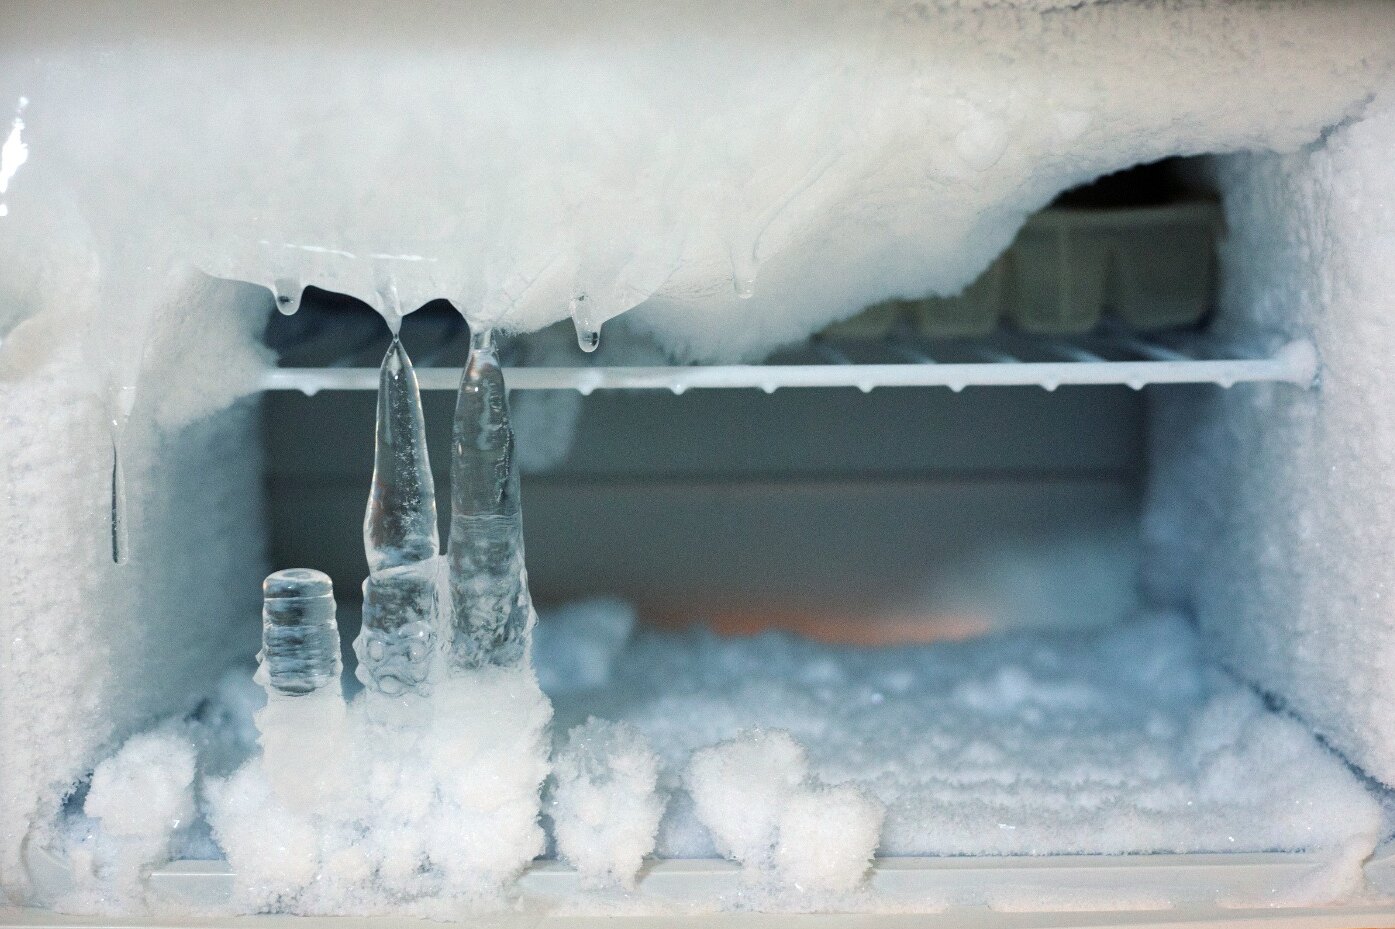 Как правильно разморозить холодильник и не сломать его: пошаговая инструкция